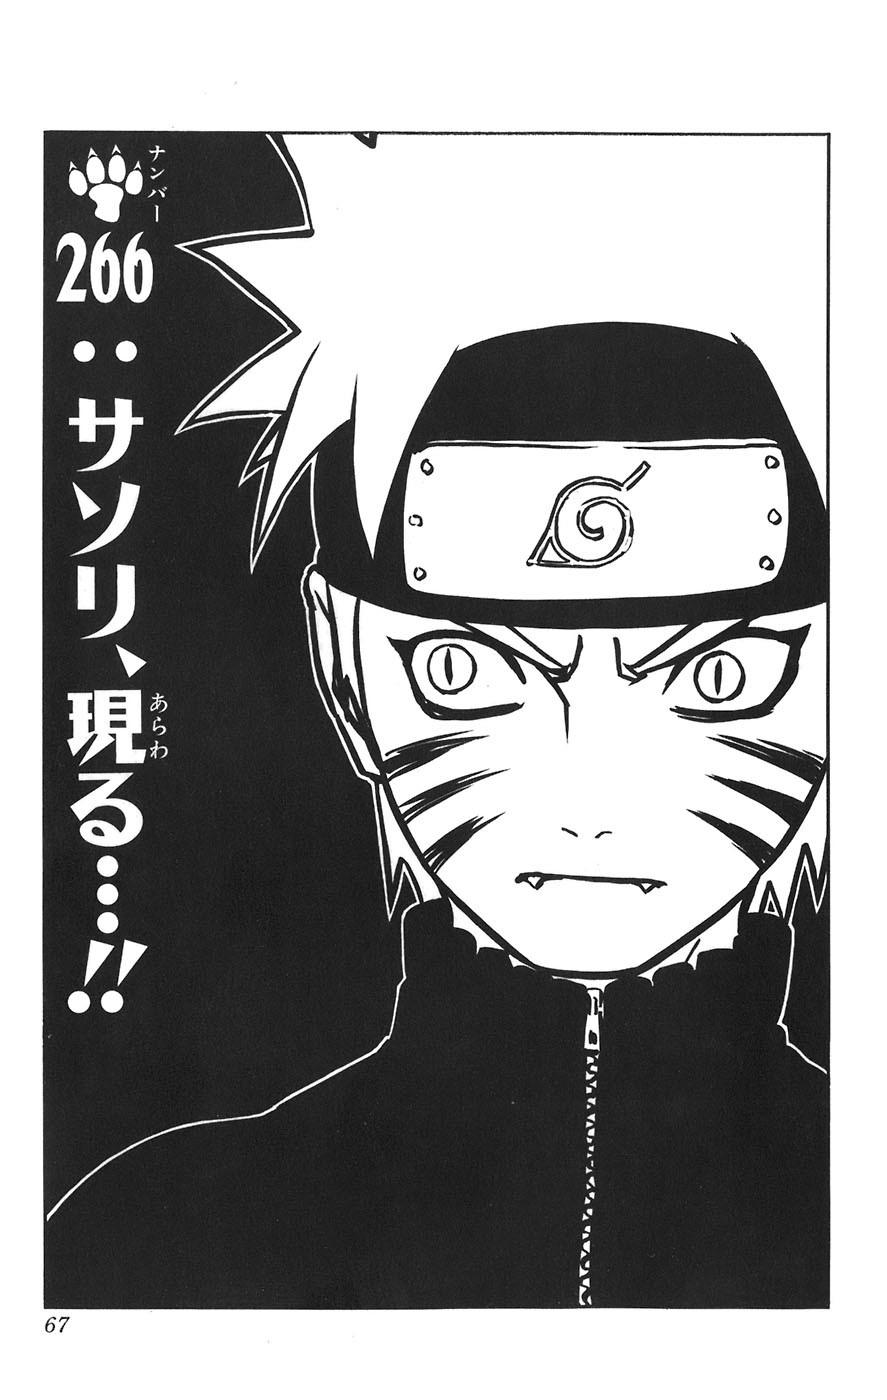 NarutoAKATSUKI MATADOR///Naruto Shippuden Episodio 266 //Mangá